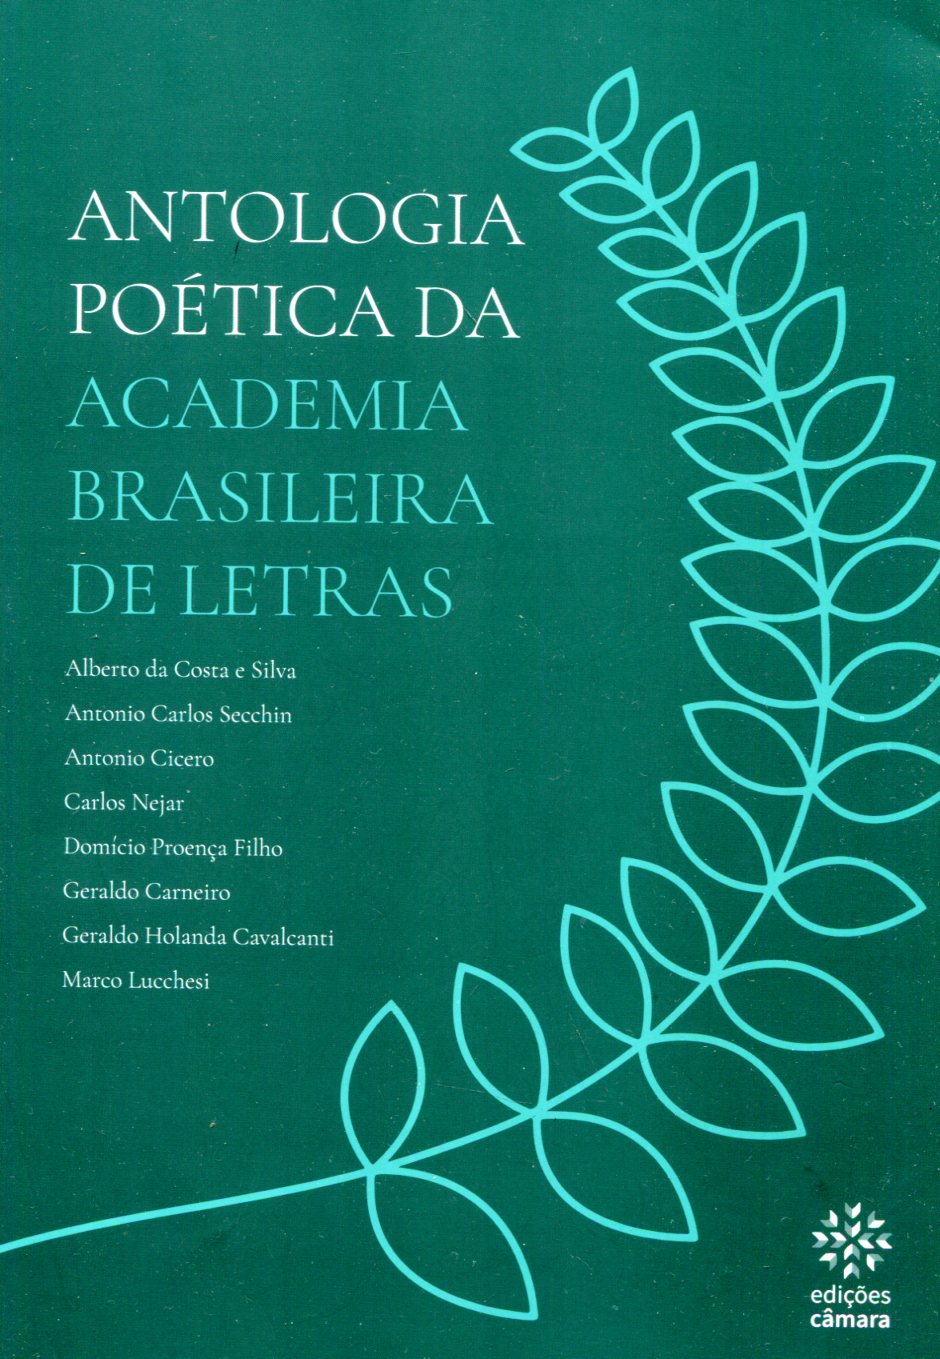 Domício Proença Filho  Academia Brasileira de Letras